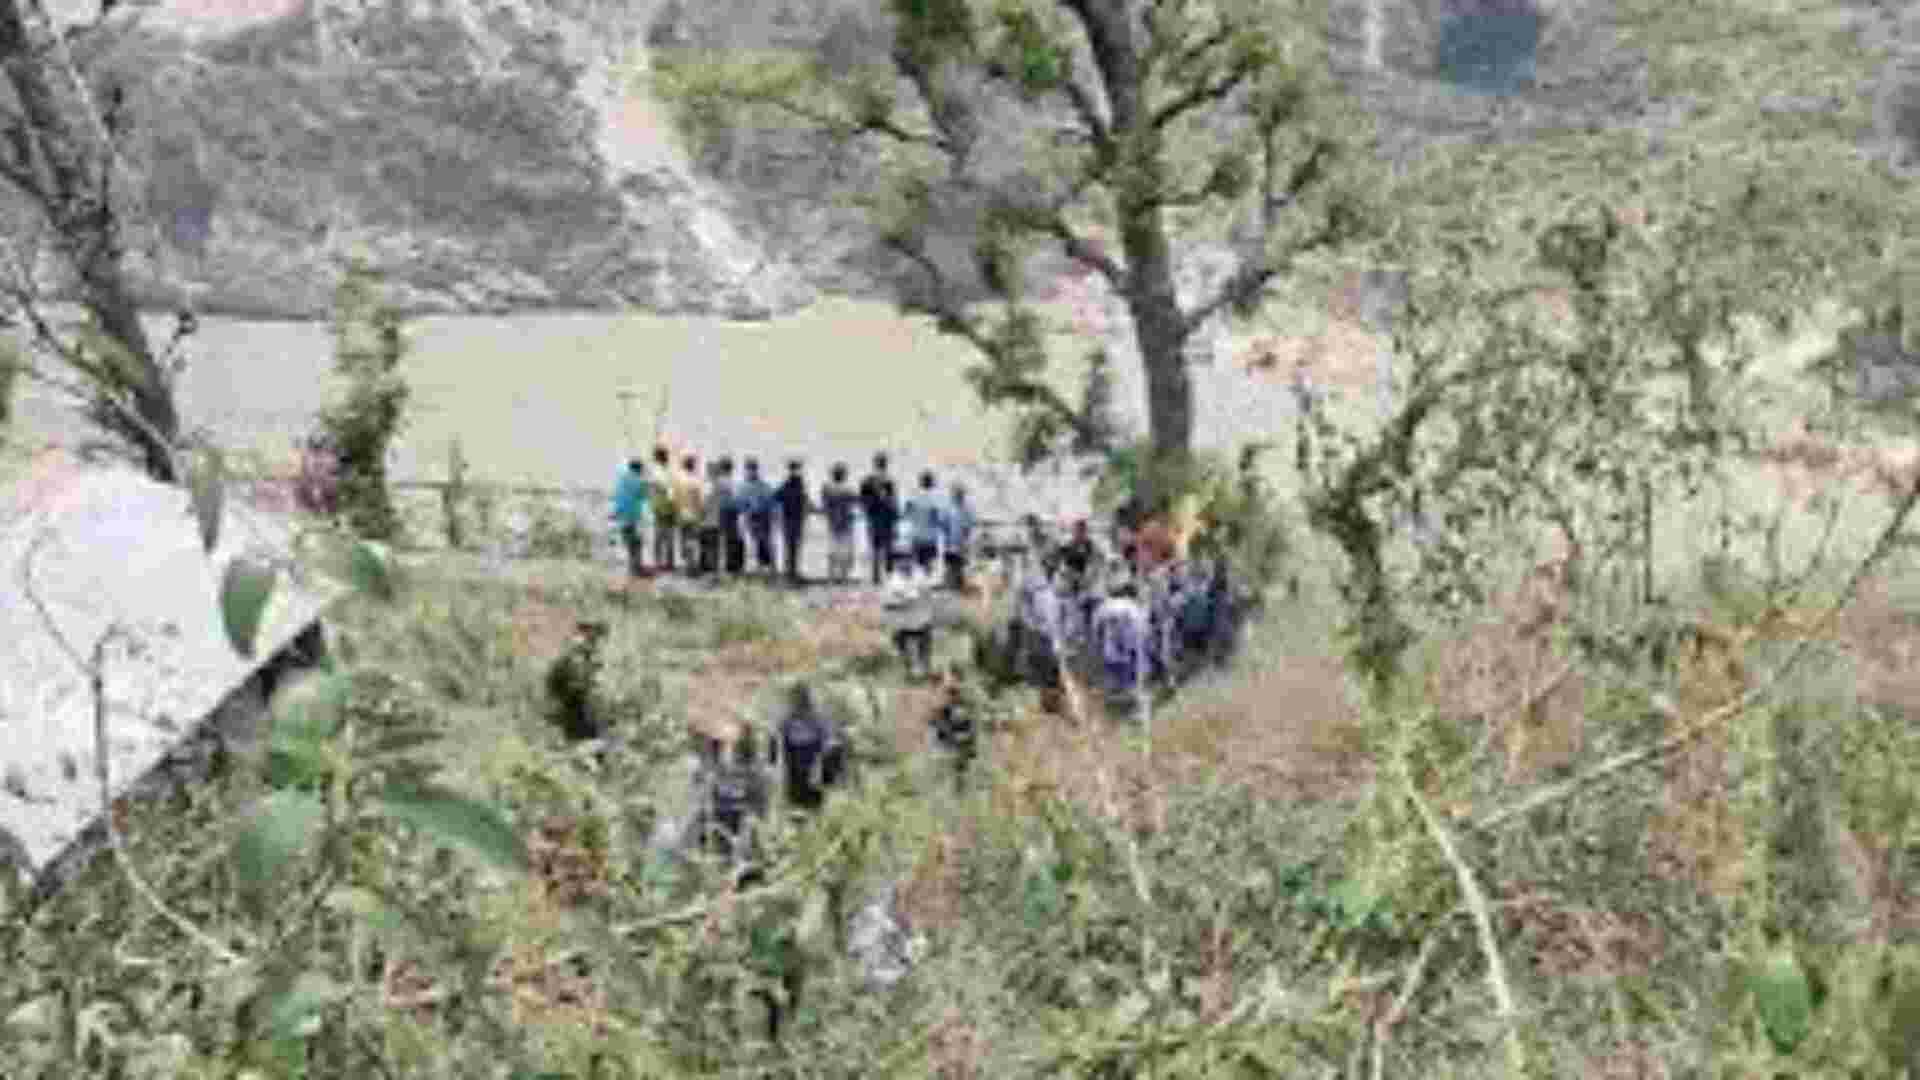 Tempo traveller accident in Uttarakhand kills 8